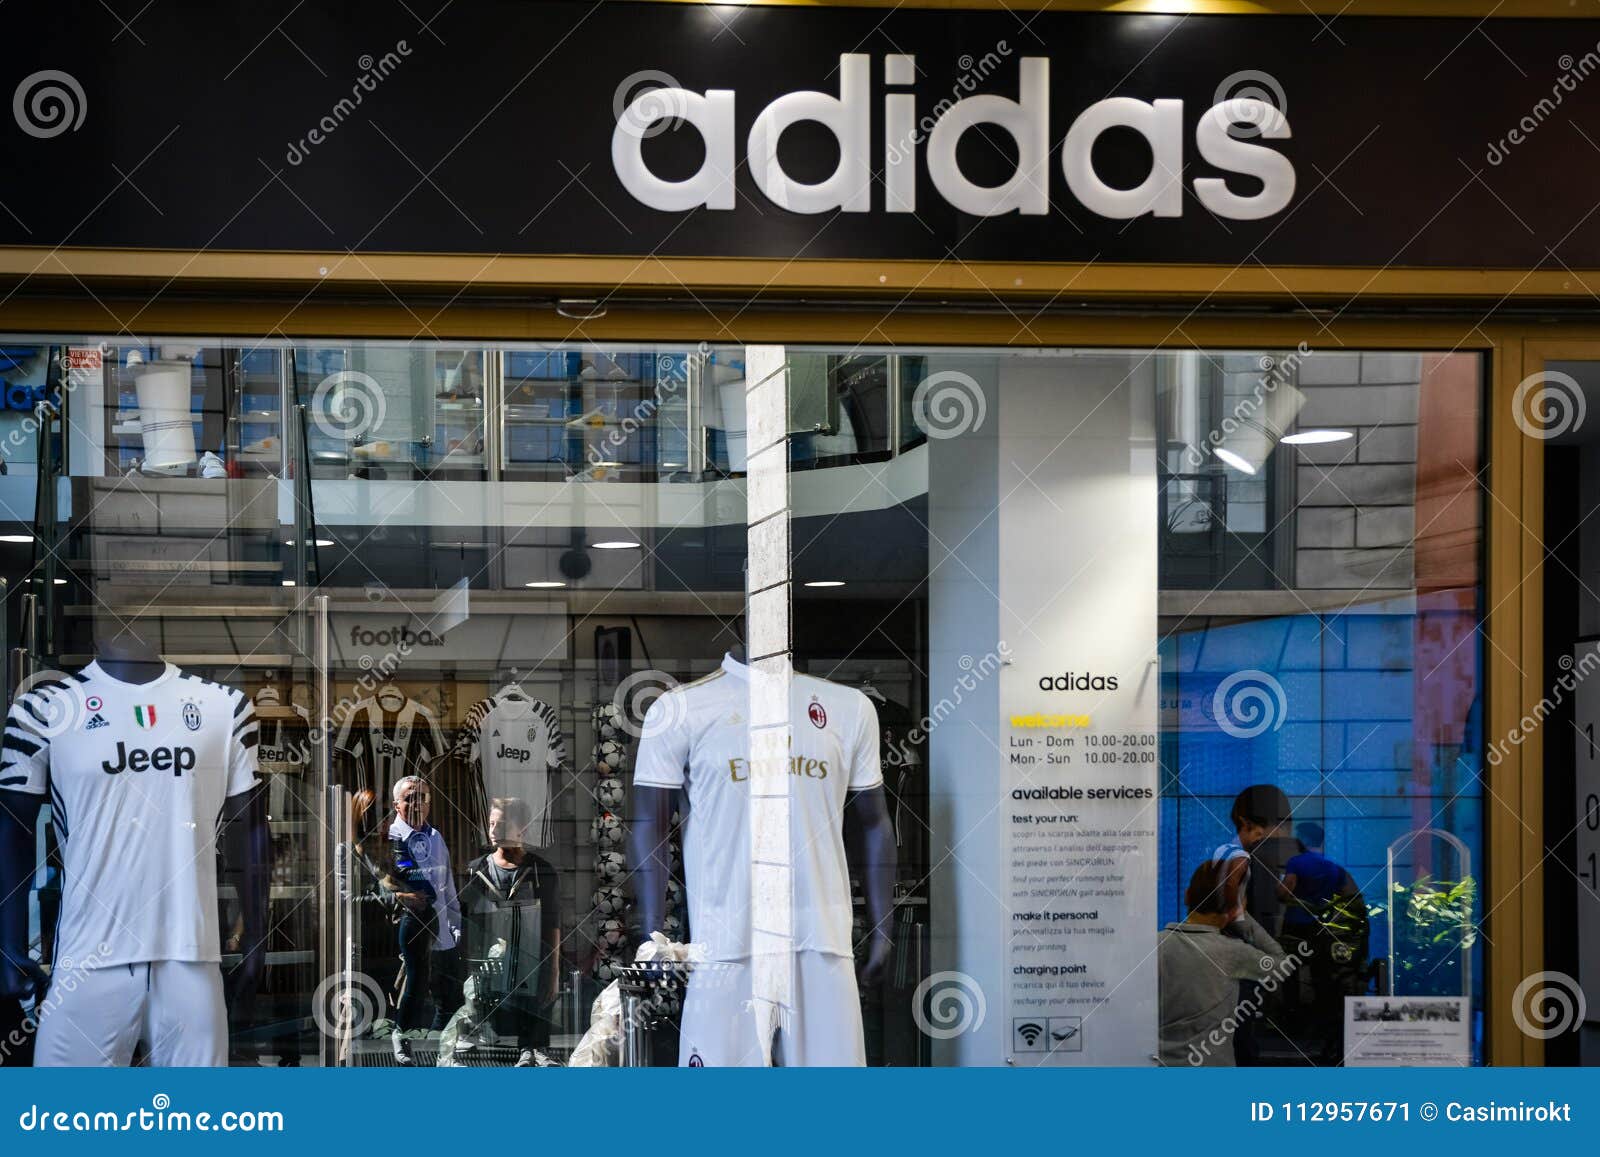 adidas stores in milan